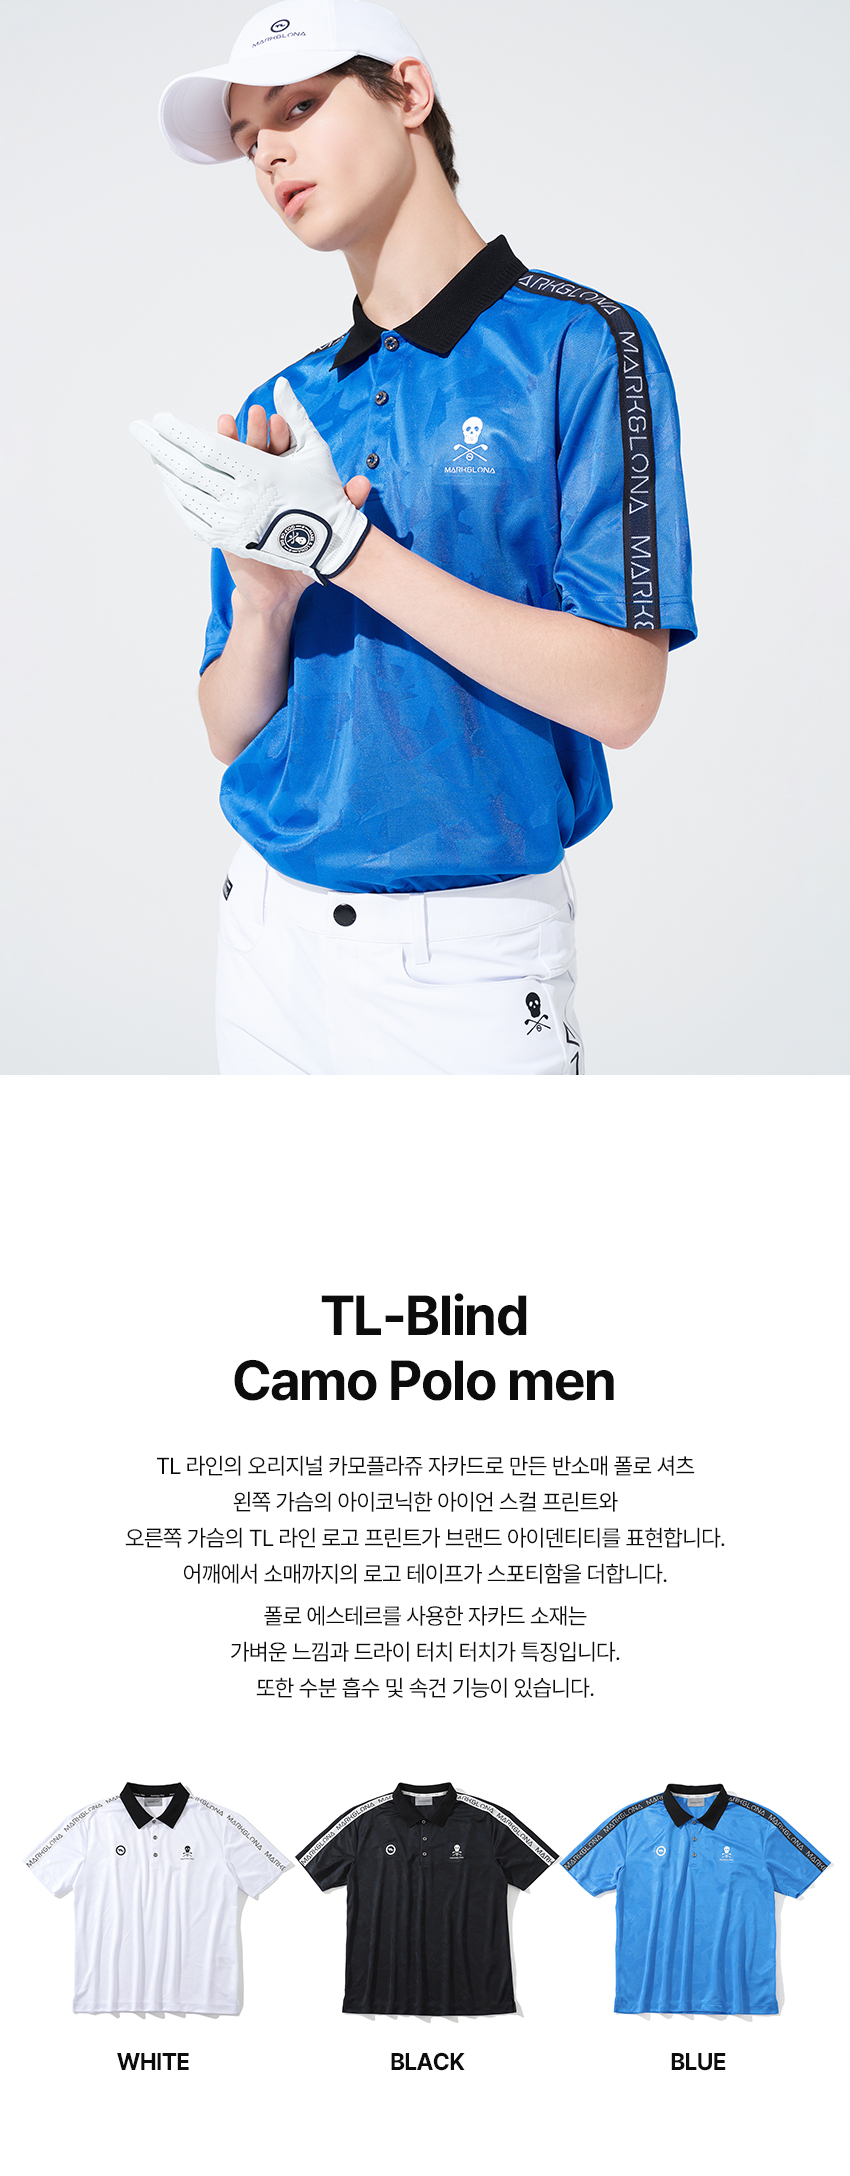 13.TL_Blind_Camo_Polo_men_01.jpg